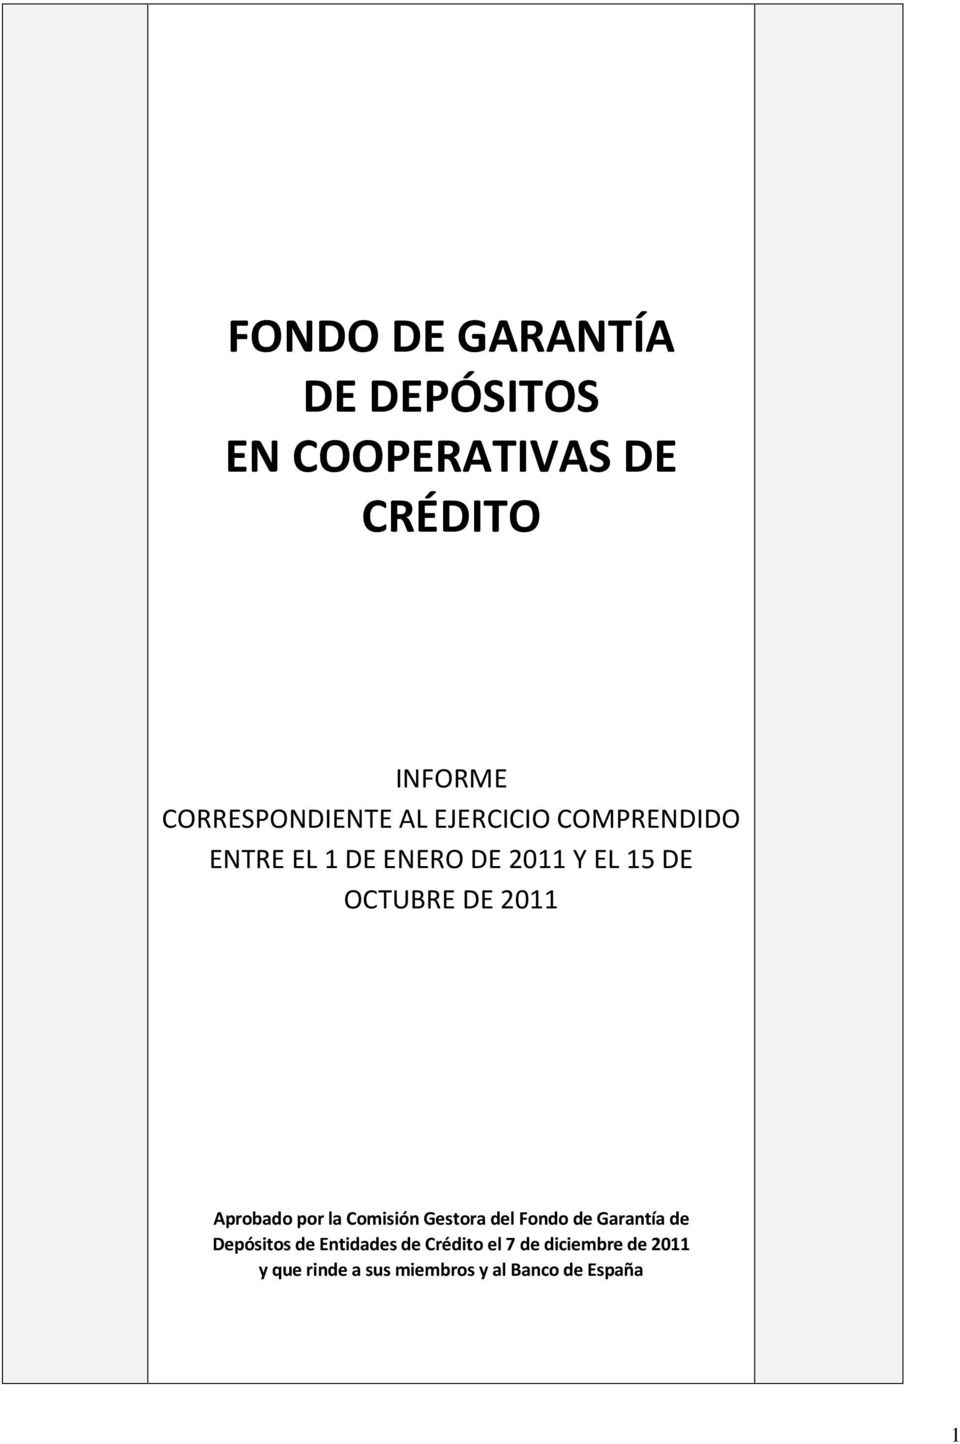 Aprobado por la Comisión Gestora del Fondo de Garantía de Depósitos de Entidades